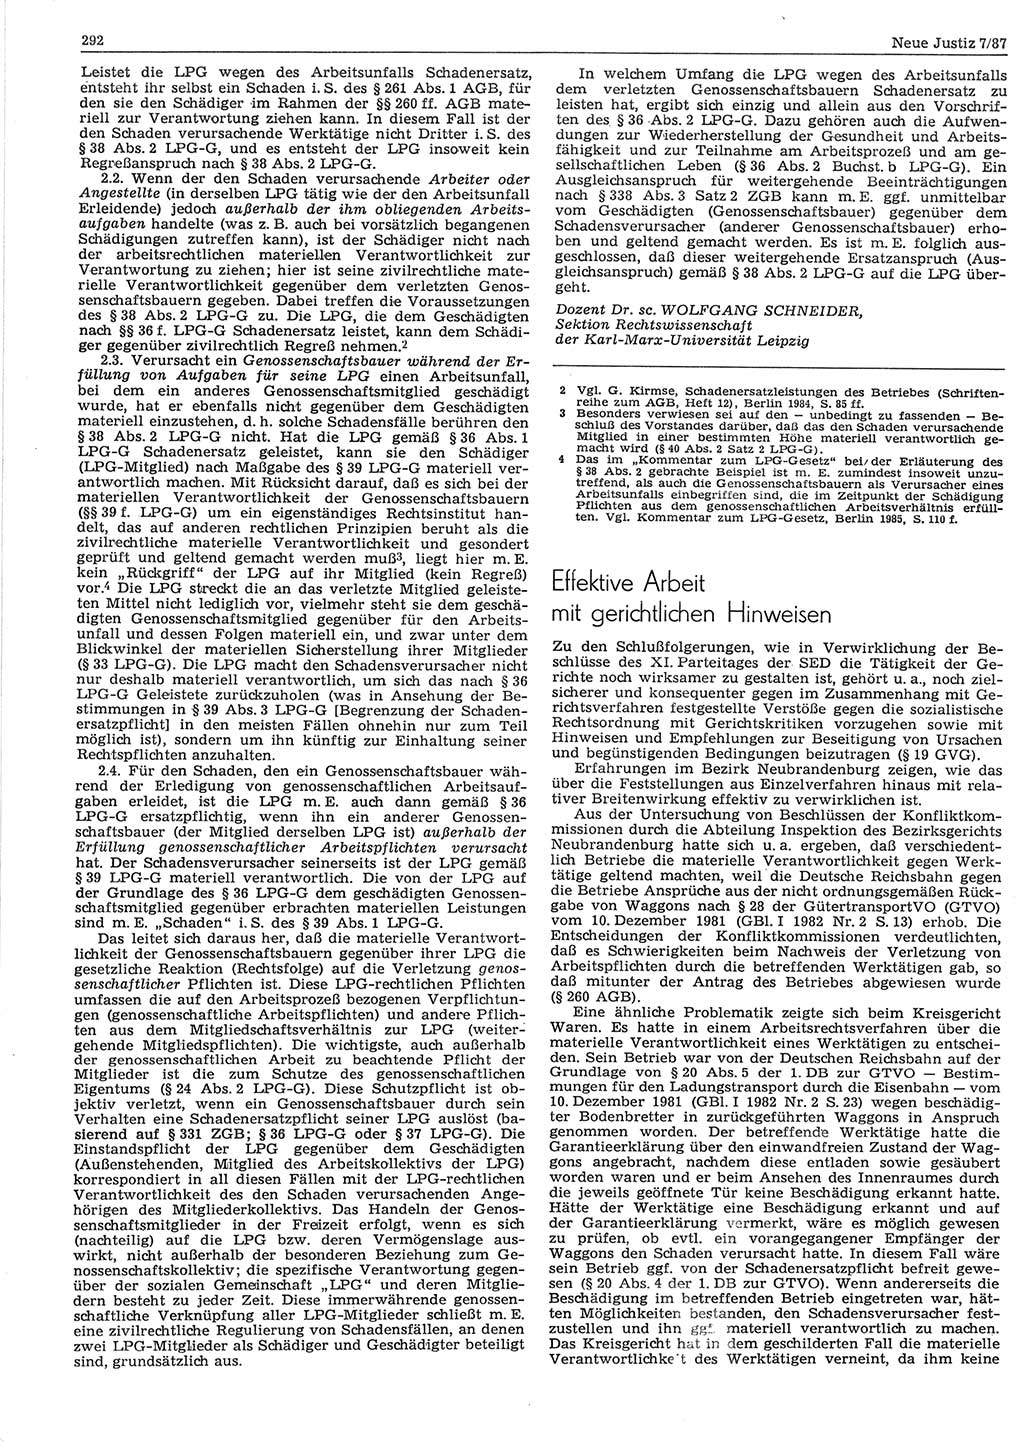 Neue Justiz (NJ), Zeitschrift für sozialistisches Recht und Gesetzlichkeit [Deutsche Demokratische Republik (DDR)], 41. Jahrgang 1987, Seite 292 (NJ DDR 1987, S. 292)